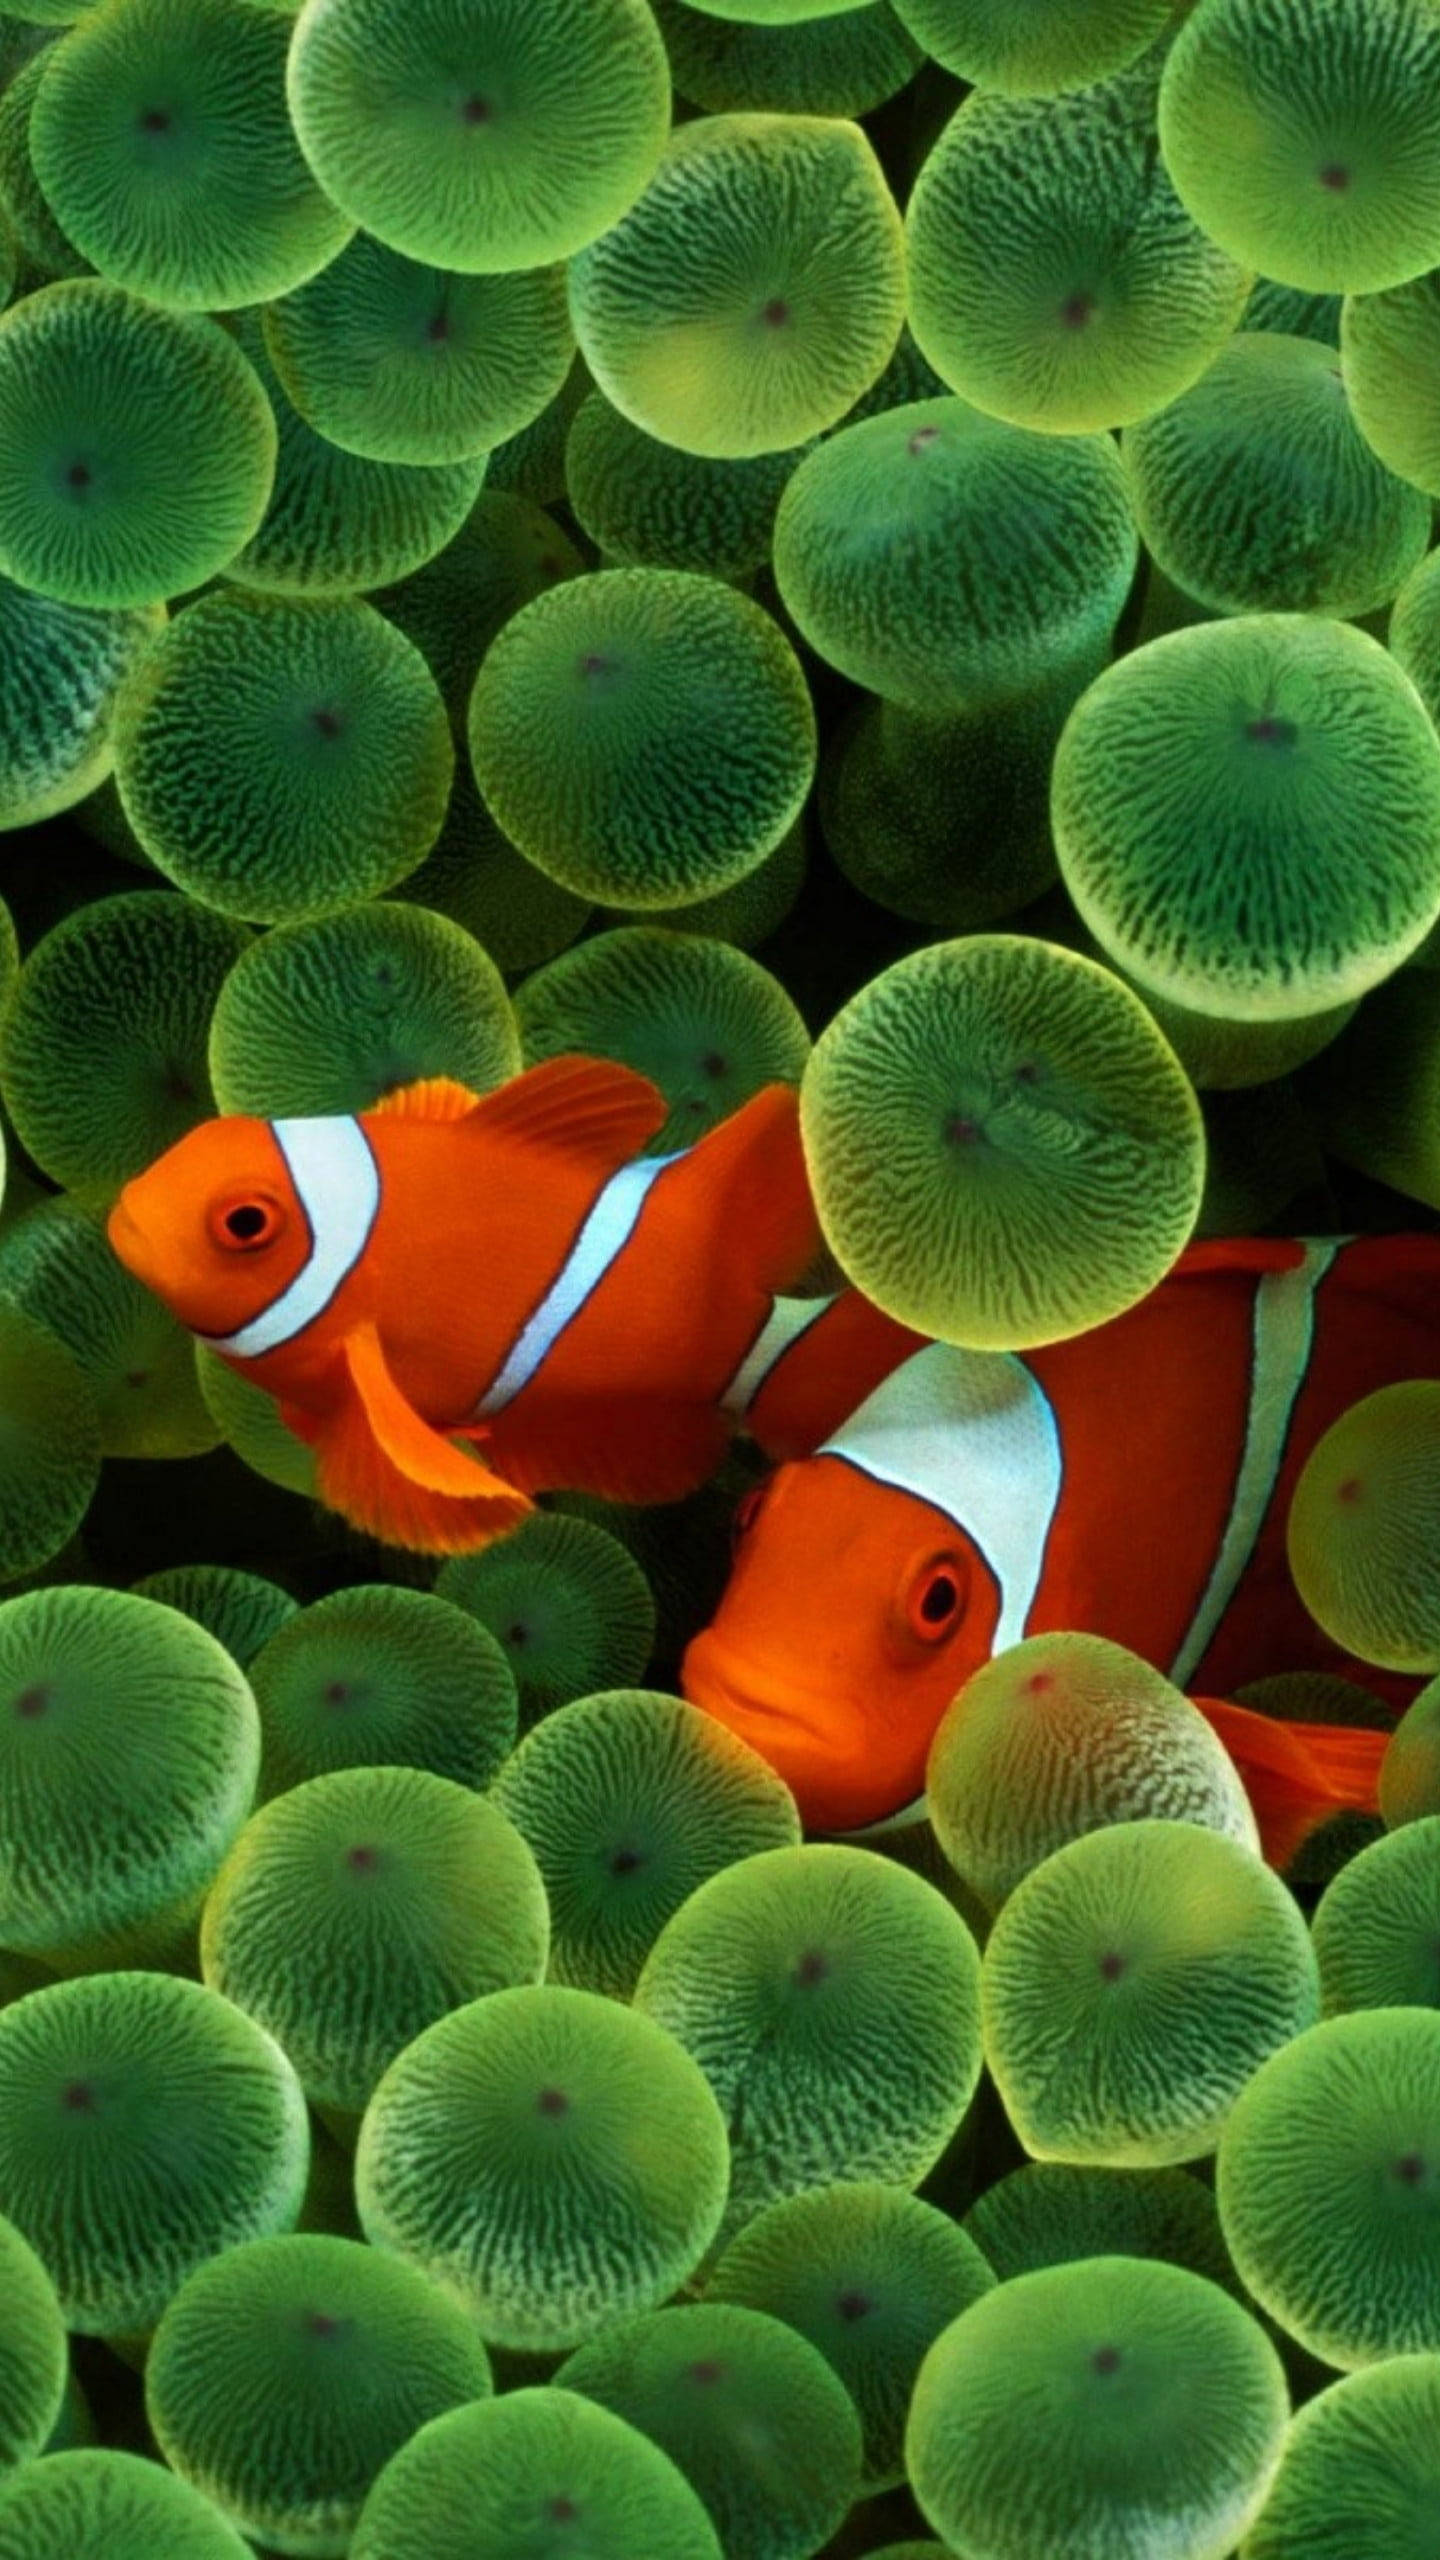 Hãy khám phá angelfish xinh đẹp đang bơi lội và tìm hiểu thêm về loài cá Clownfish đáng yêu này. Hình ảnh chân thực và sống động sẽ khiến bạn có cảm giác như đang đắm mình dưới biển cả.